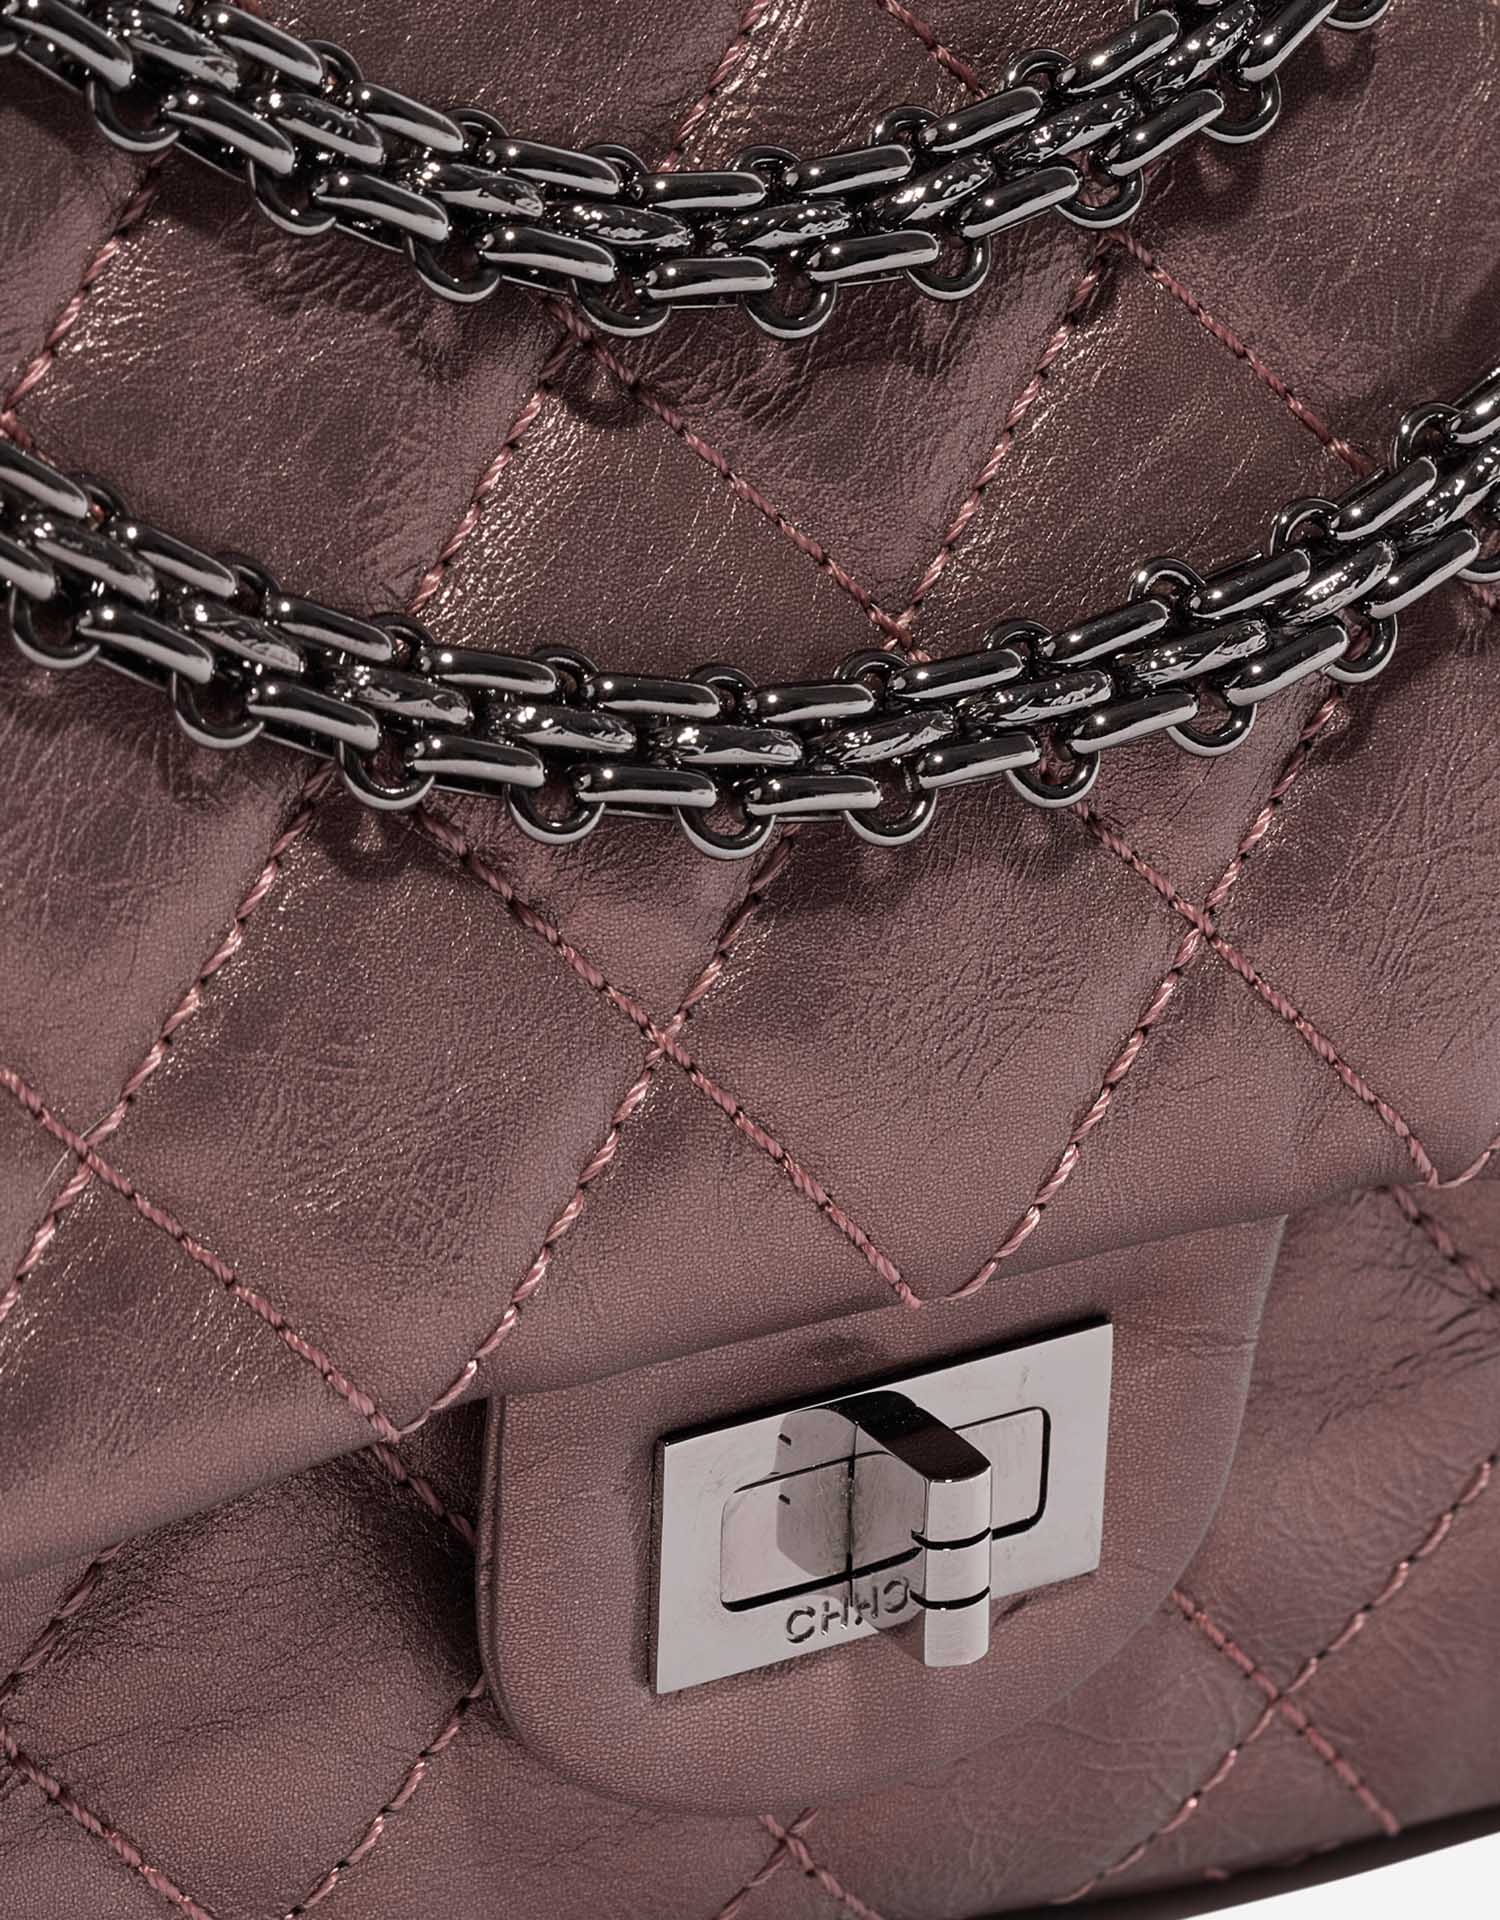 Chanel 255Reissue 226 MetallicLiliac Closing System | Verkaufen Sie Ihre Designer-Tasche auf Saclab.com